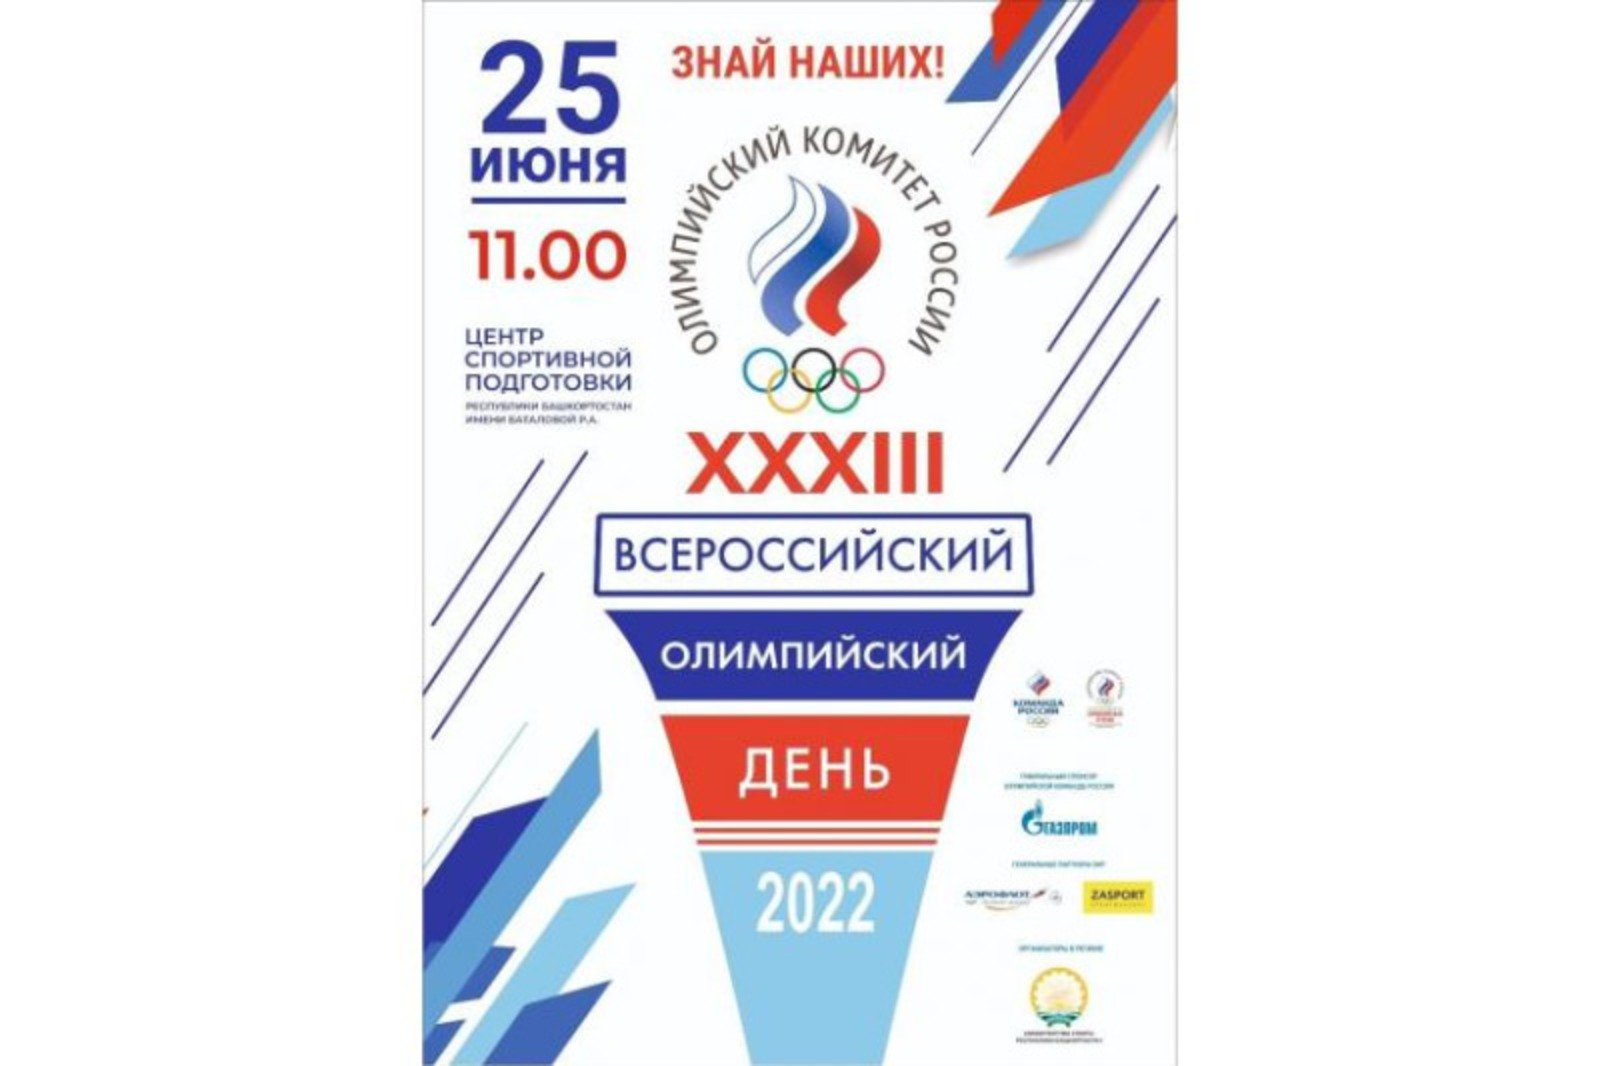 Уфа станет центром проведения спортфестиваля «XXXIII Всероссийский олимпийский день»